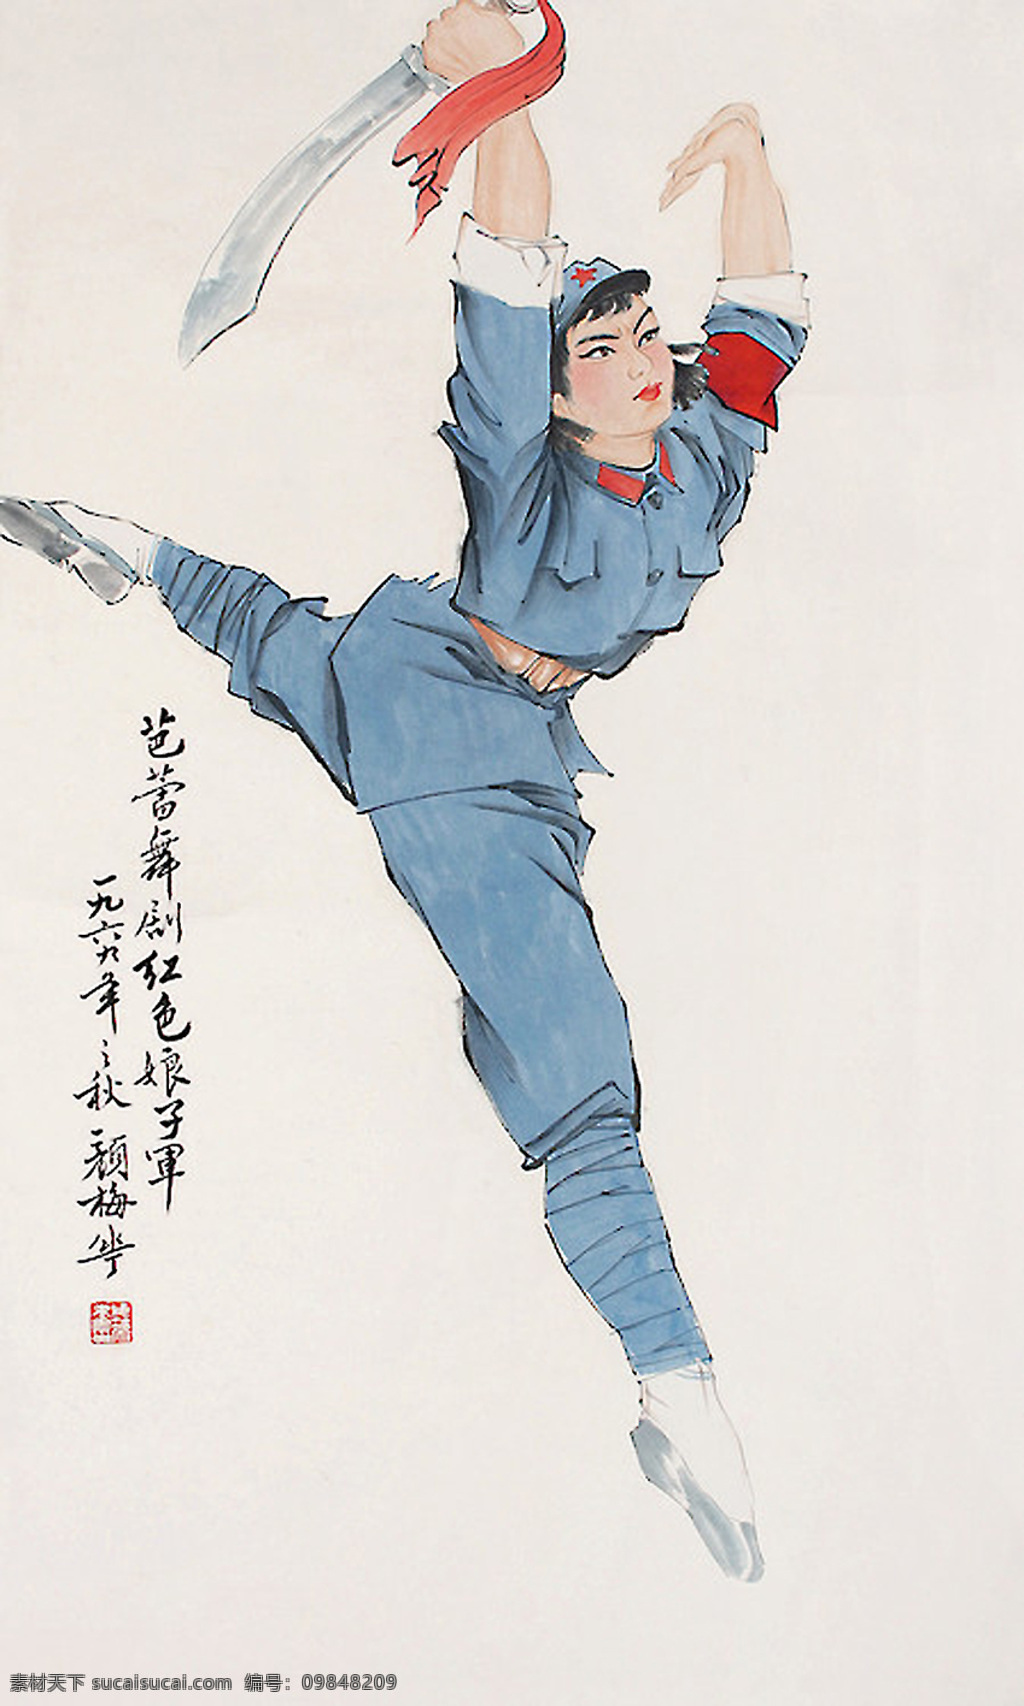 红色 娘子军 女 战士 中国 油画 文革 革命样板戏 舞剧 当代 颜梅华作 文化艺术 绘画书法 设计图库